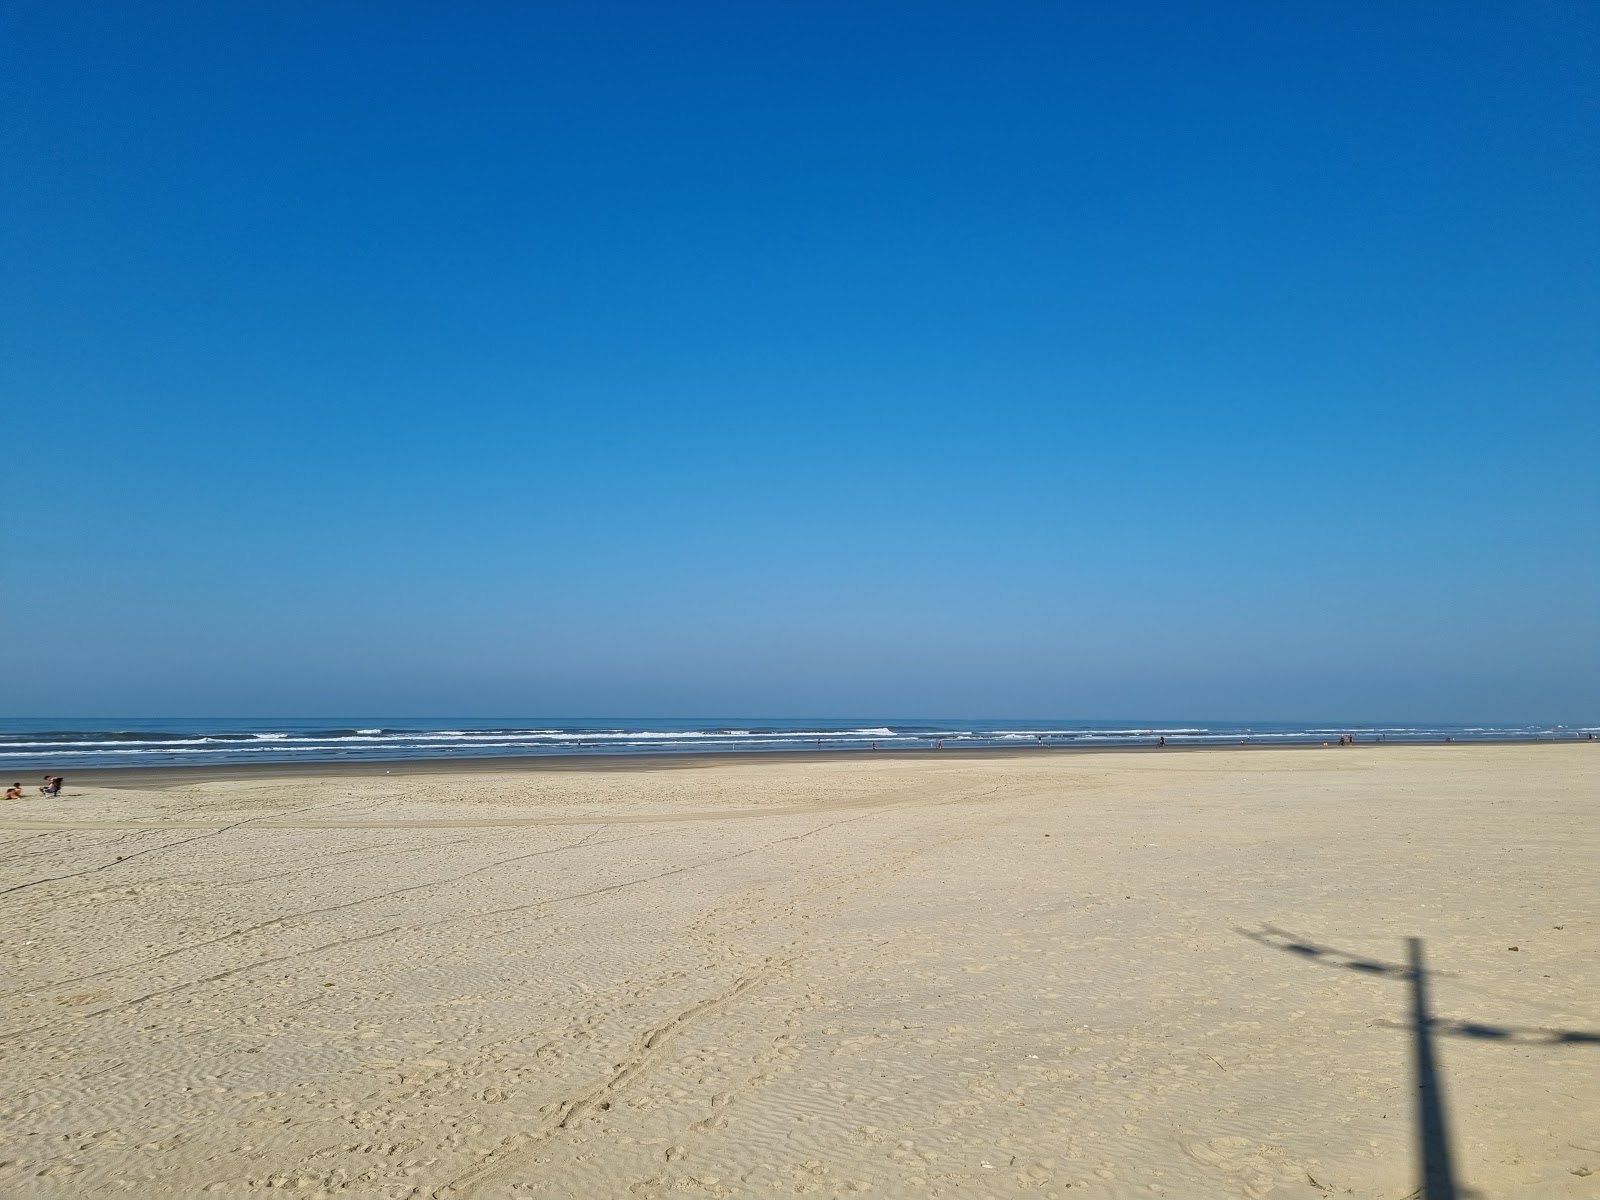 Ocian Plajı'in fotoğrafı - Çocuklu aile gezginleri için önerilir